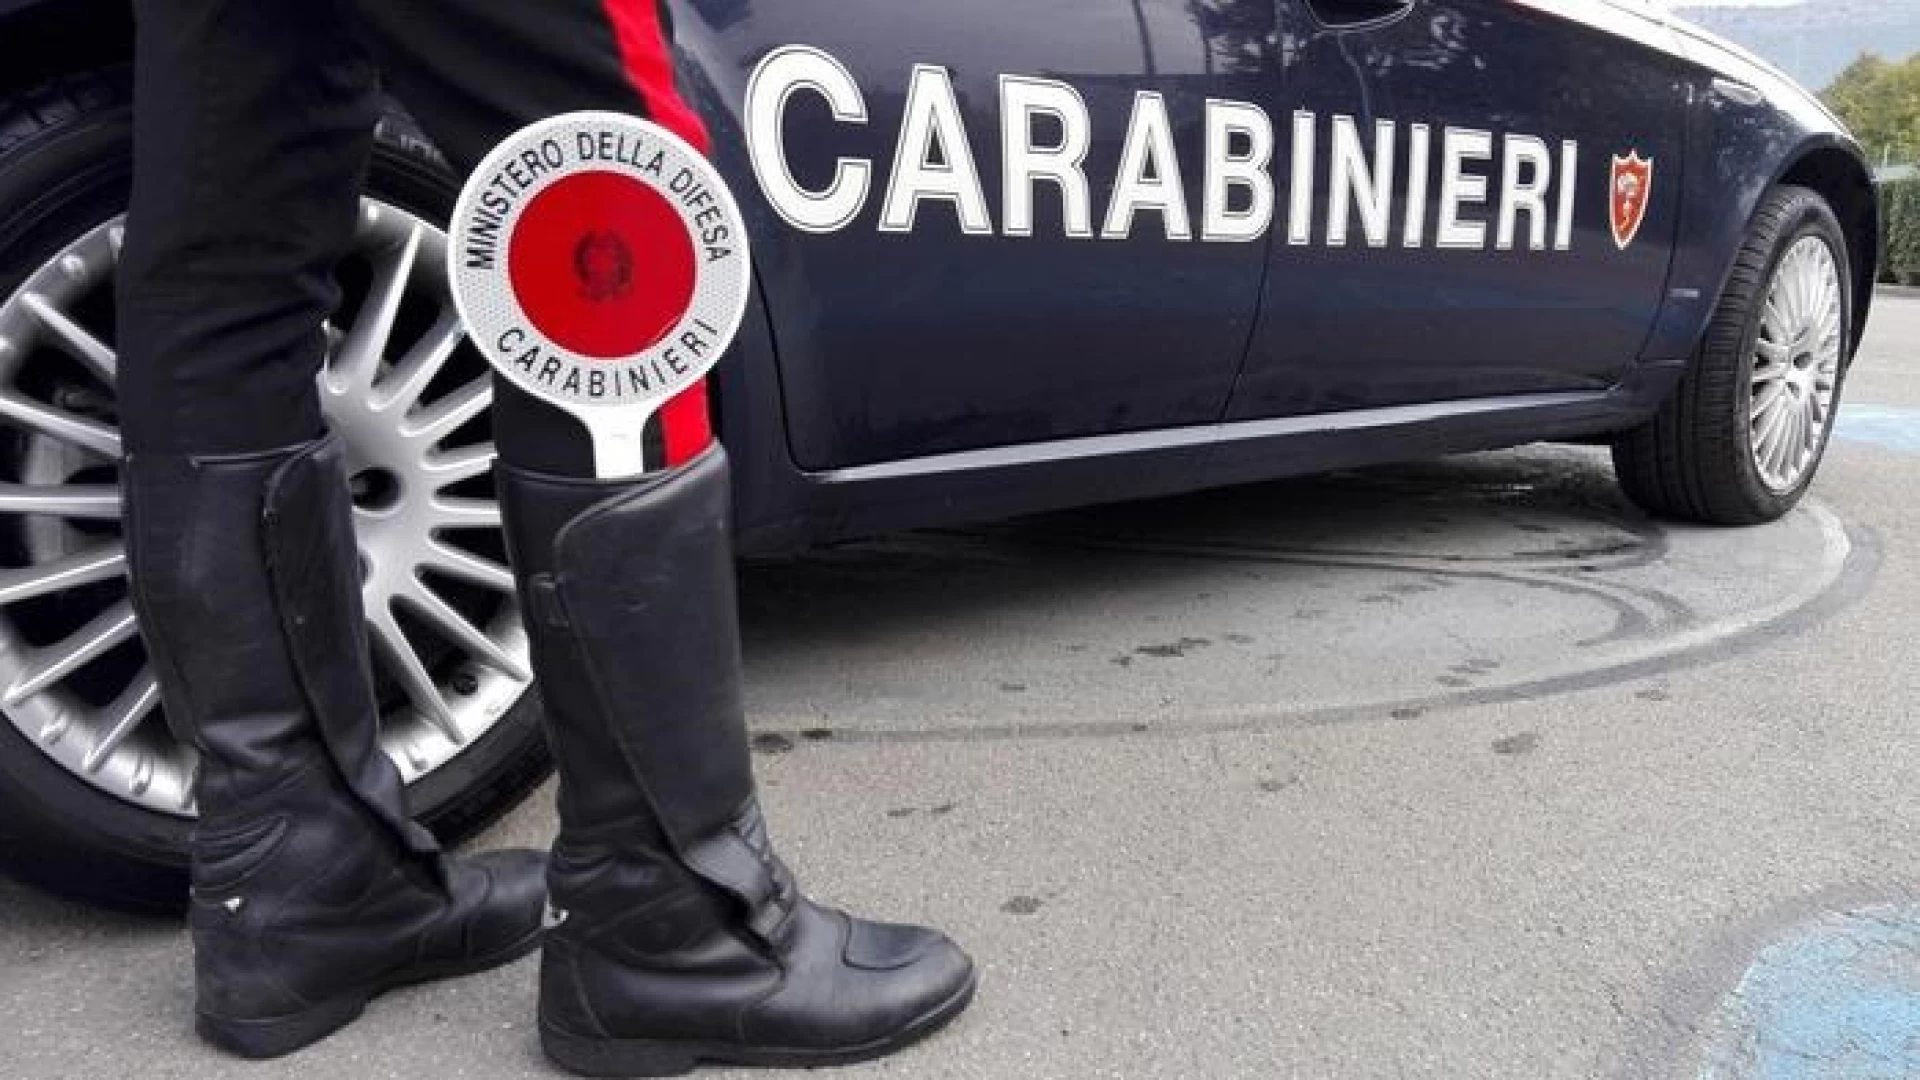 Riserva selezionata dell'Arma dei Carabinieri. Pubblicato il bando per la selezione pubblica di ufficiali